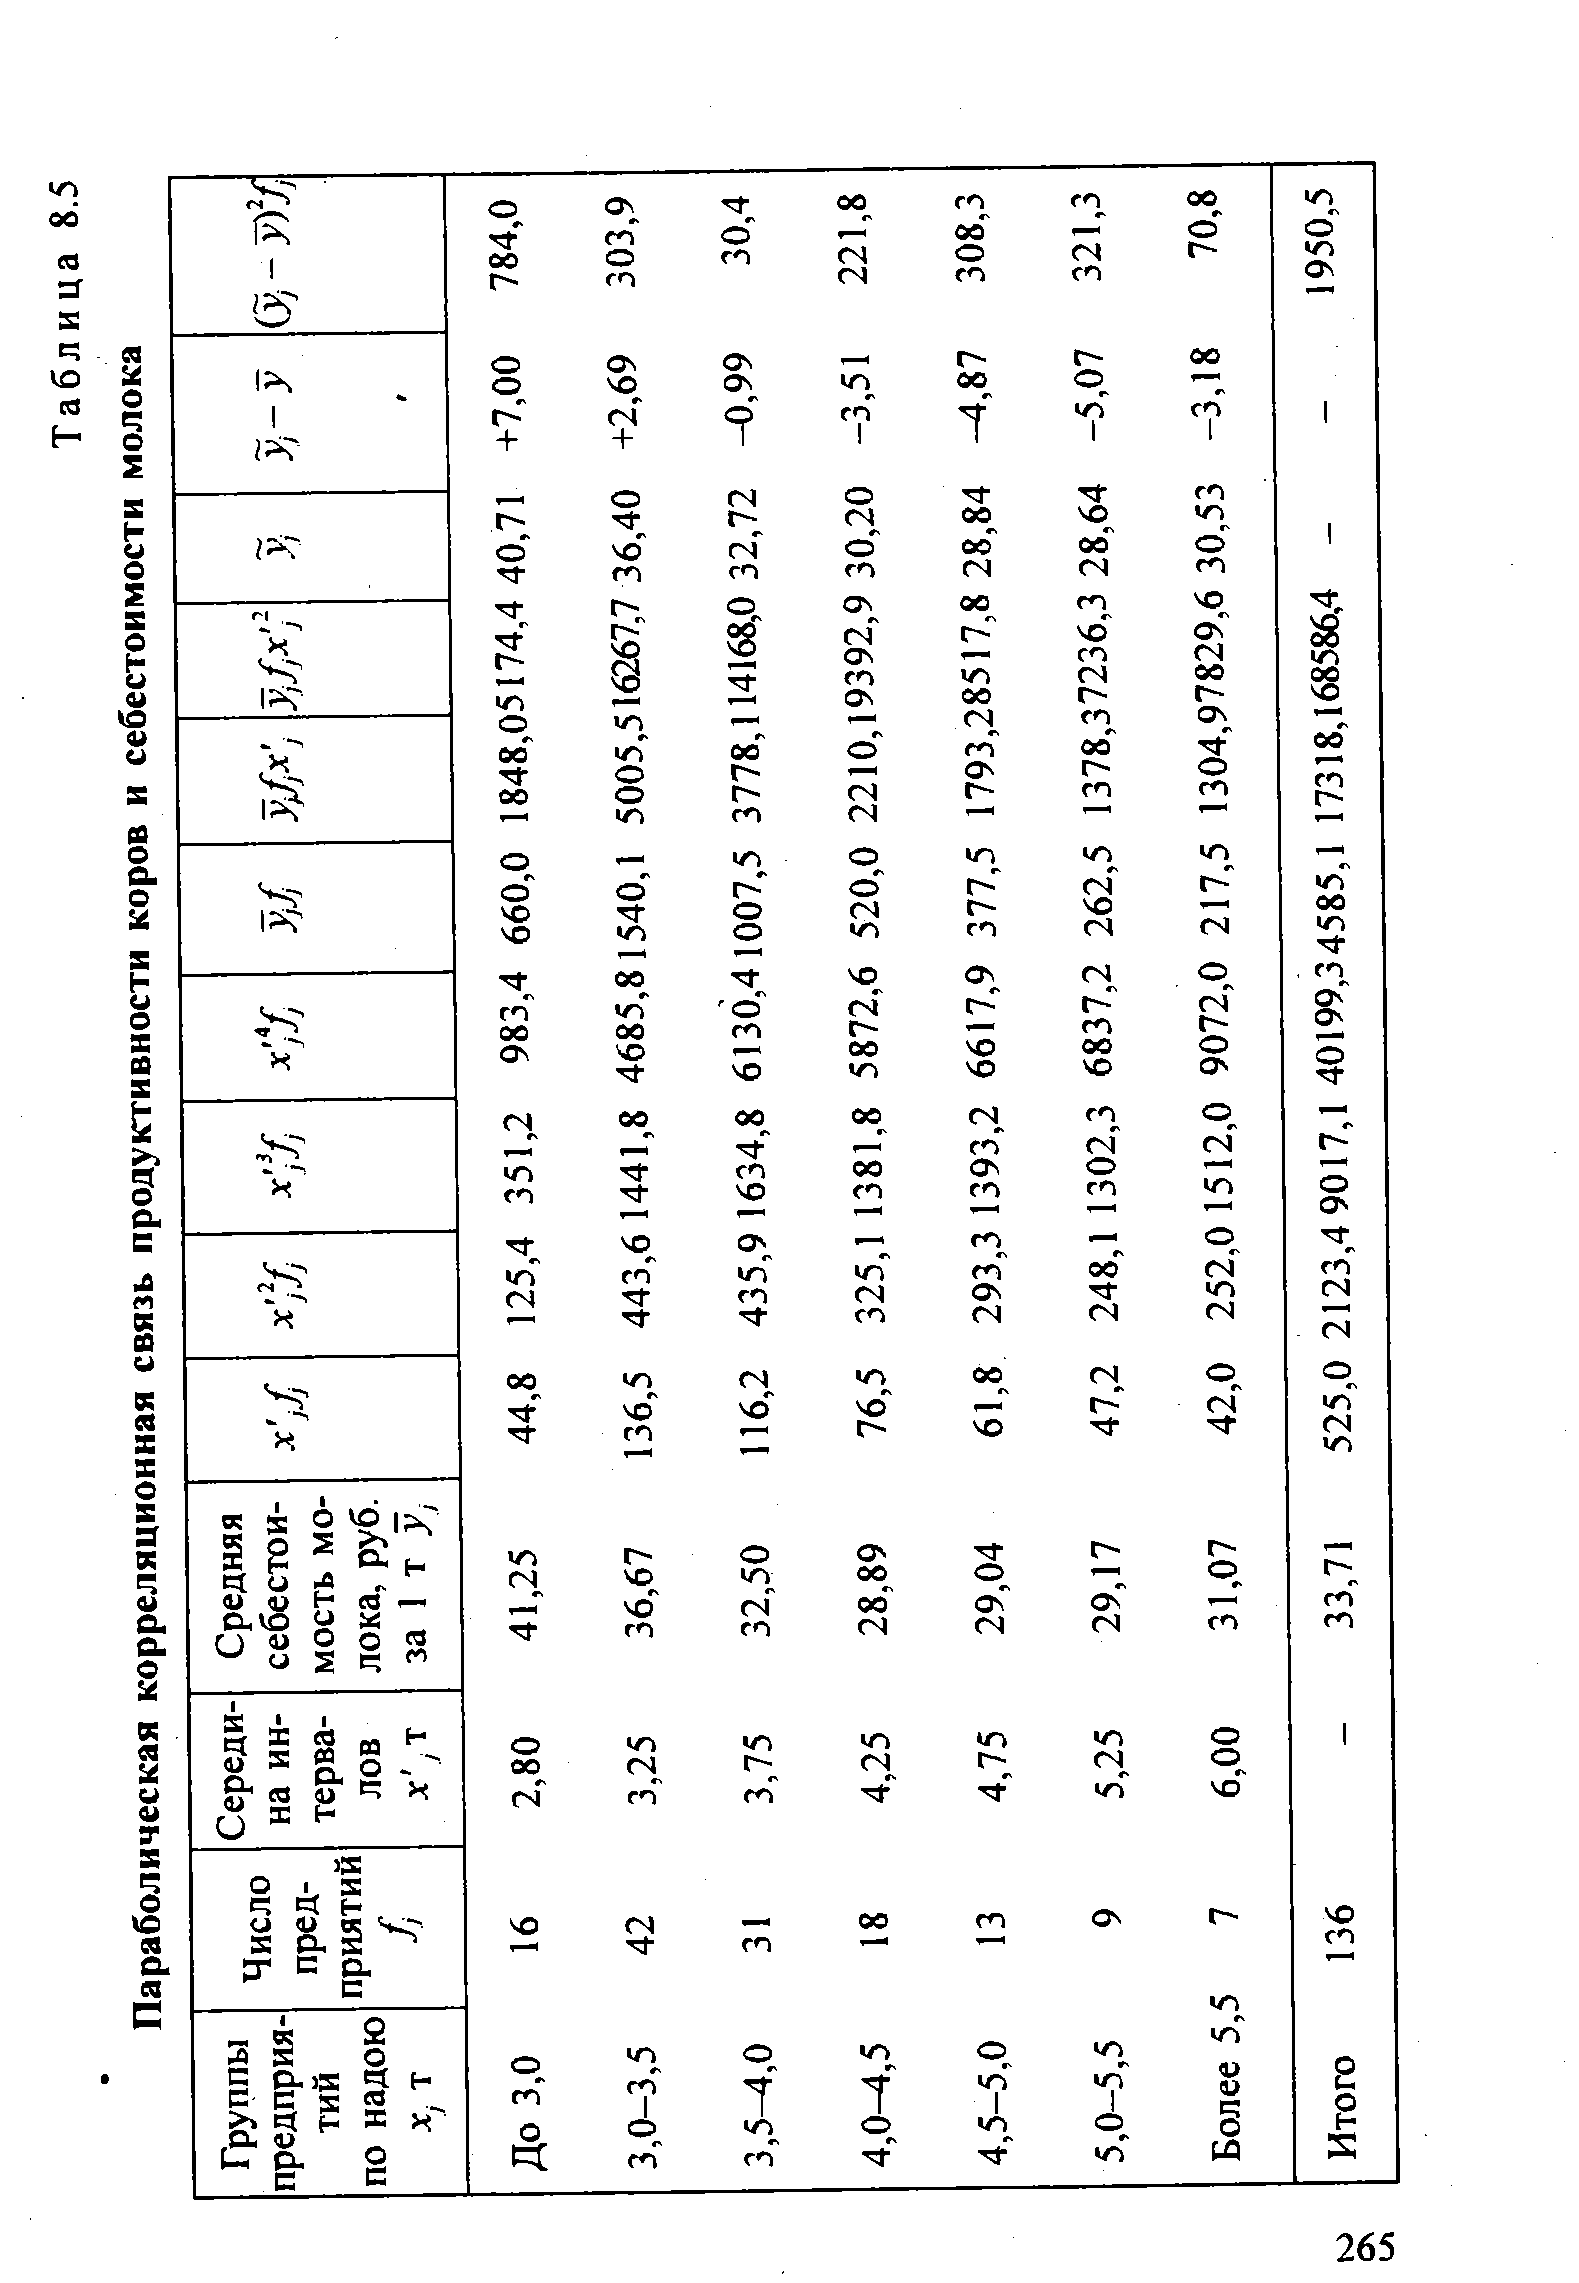 Таблица 8.5 Параболическая корреляционная связь продуктивности коров и себестоимости молока
